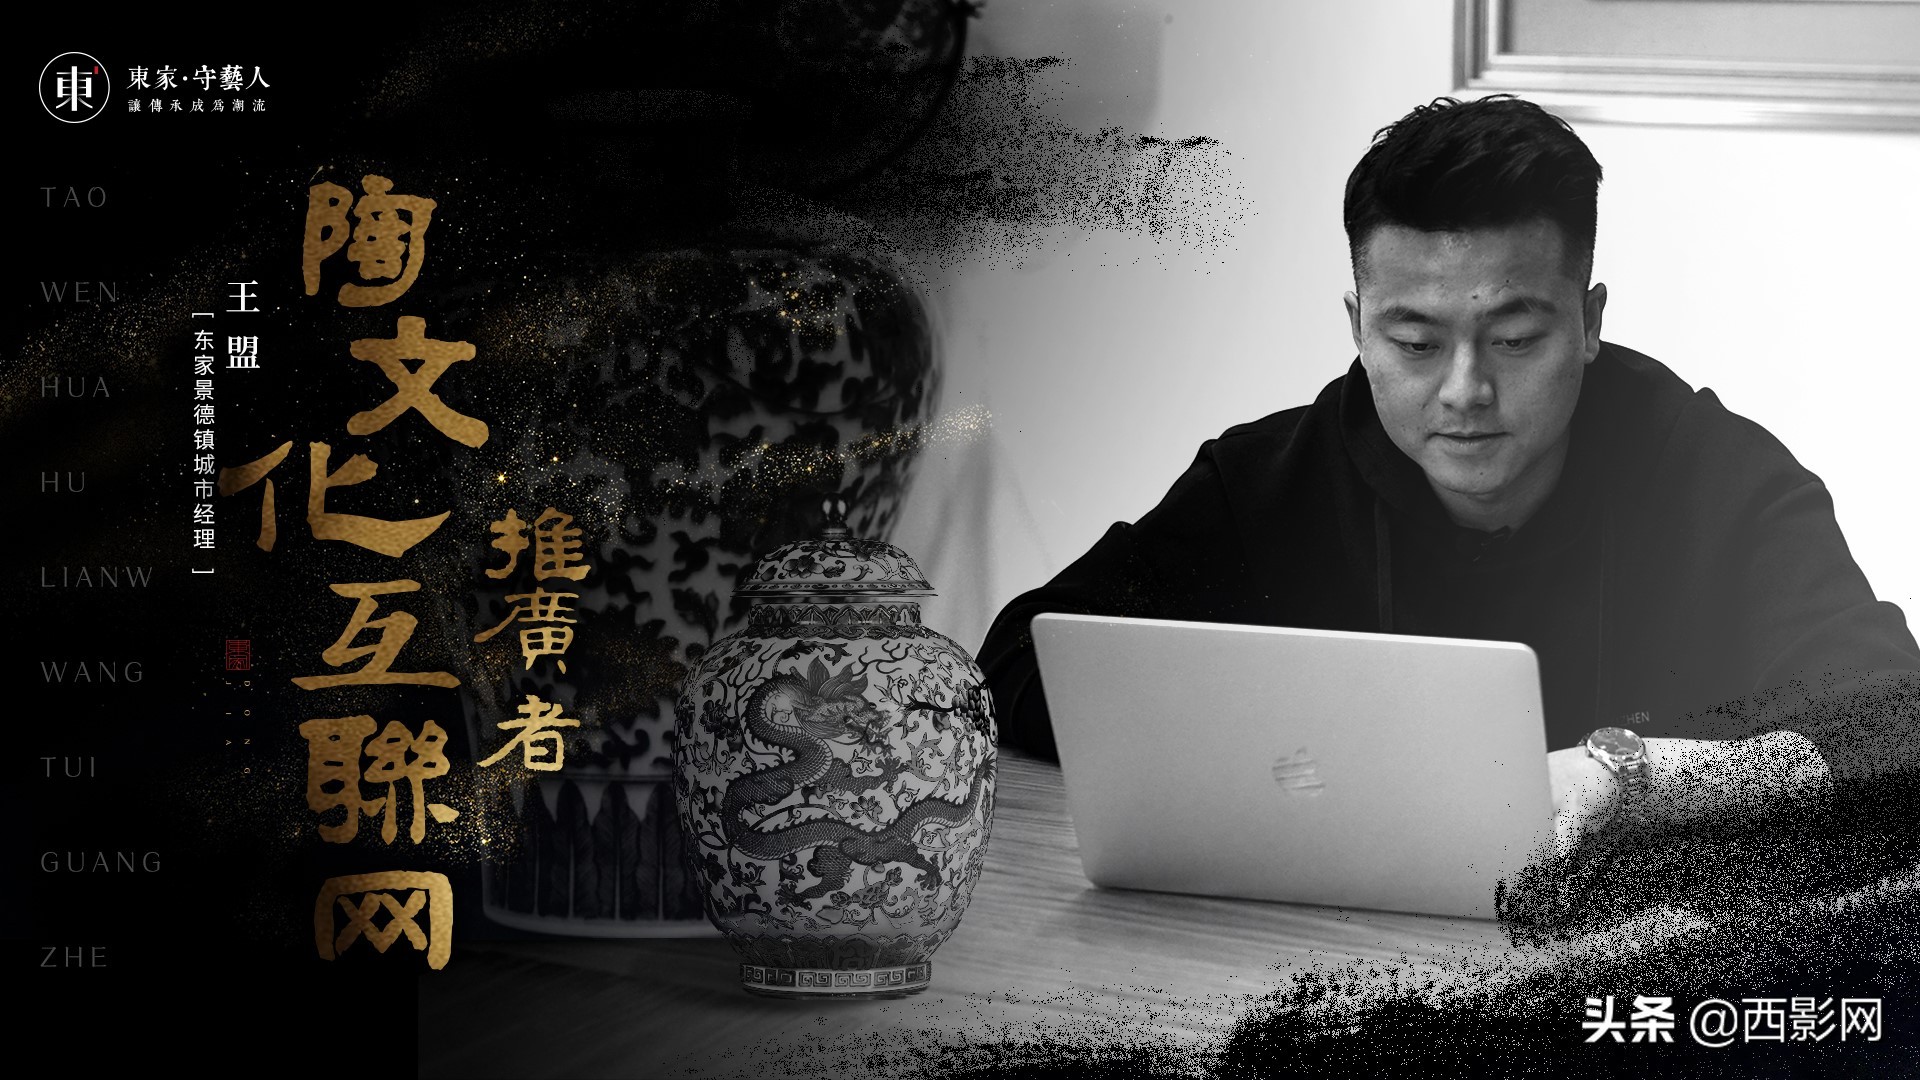 大型纪录片《守艺中国》之景德镇篇将于6月12日全网首播